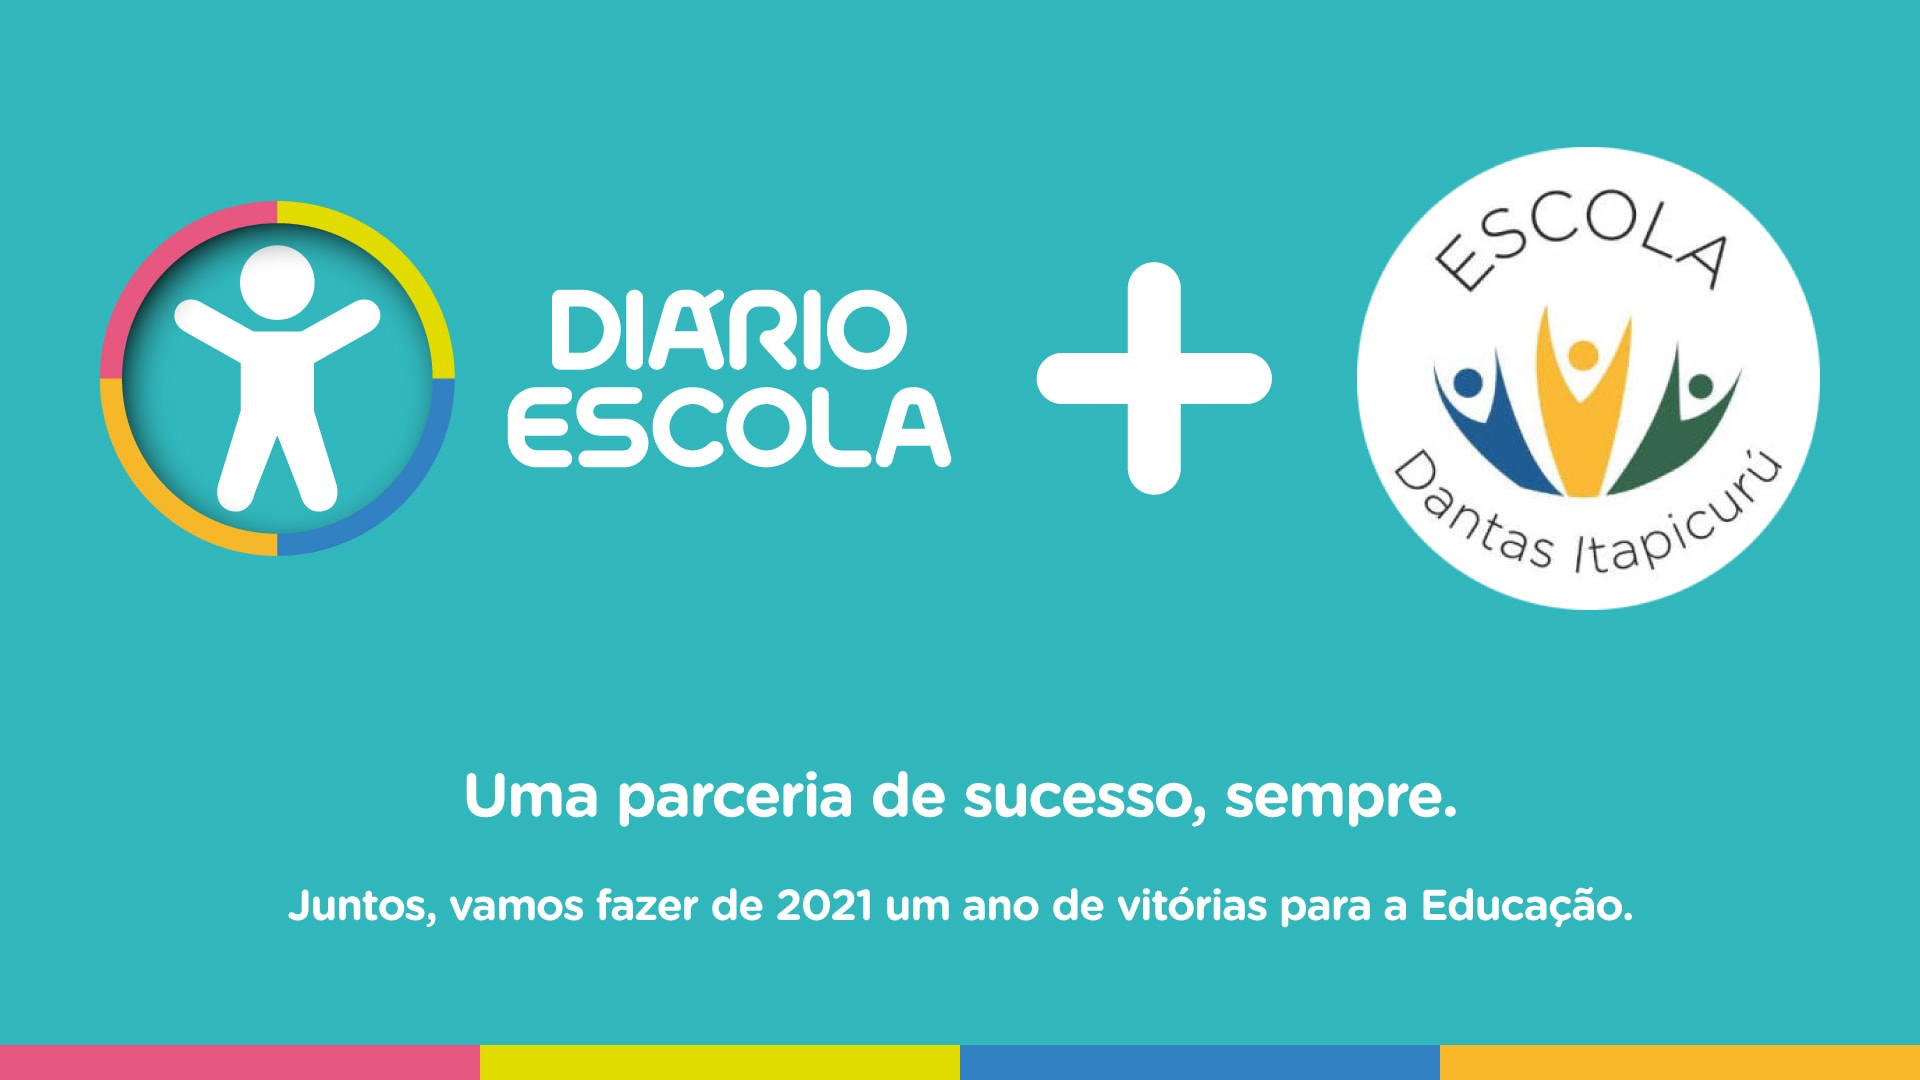 Escola Dantas Itapicurú e a parceria de sucesso com o Diário Escola